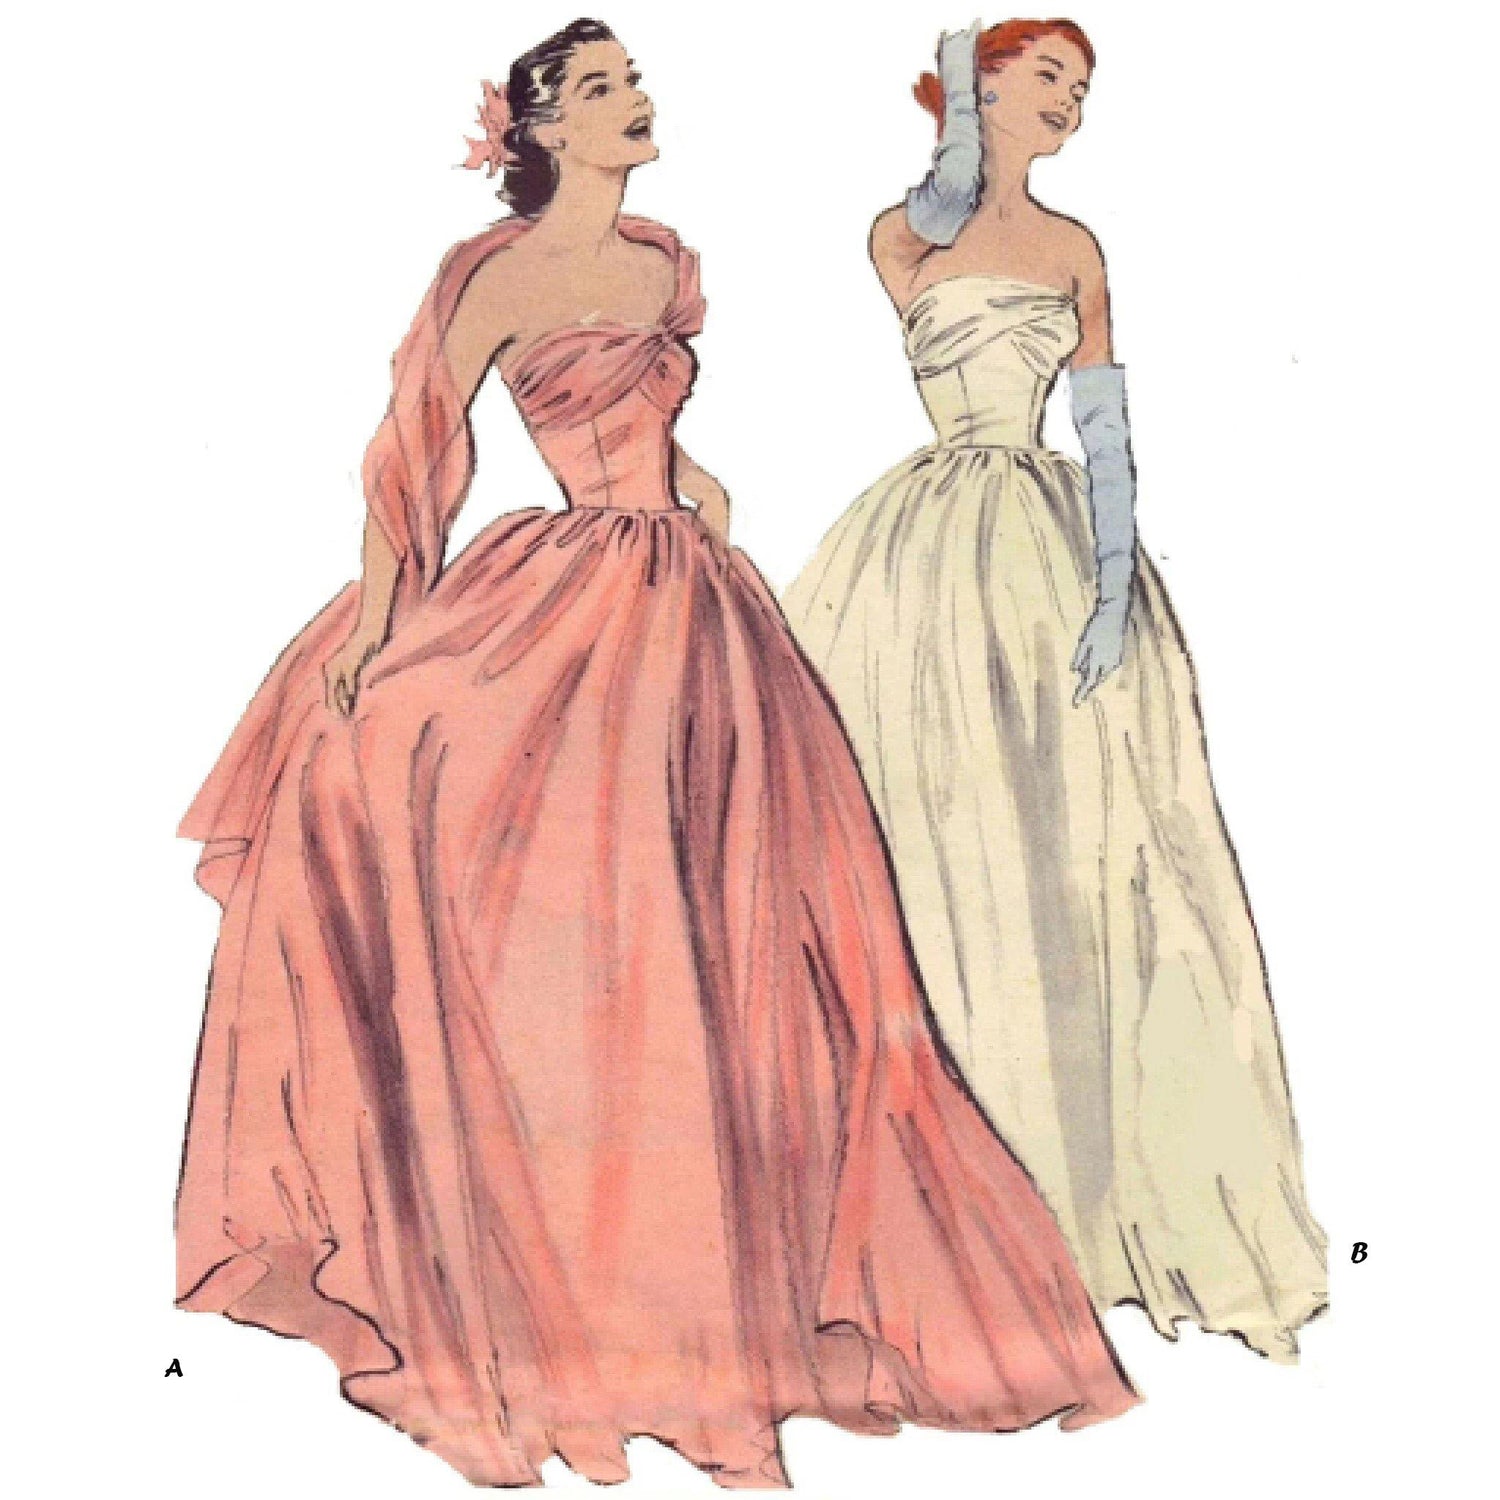 Women wearing ball gowns